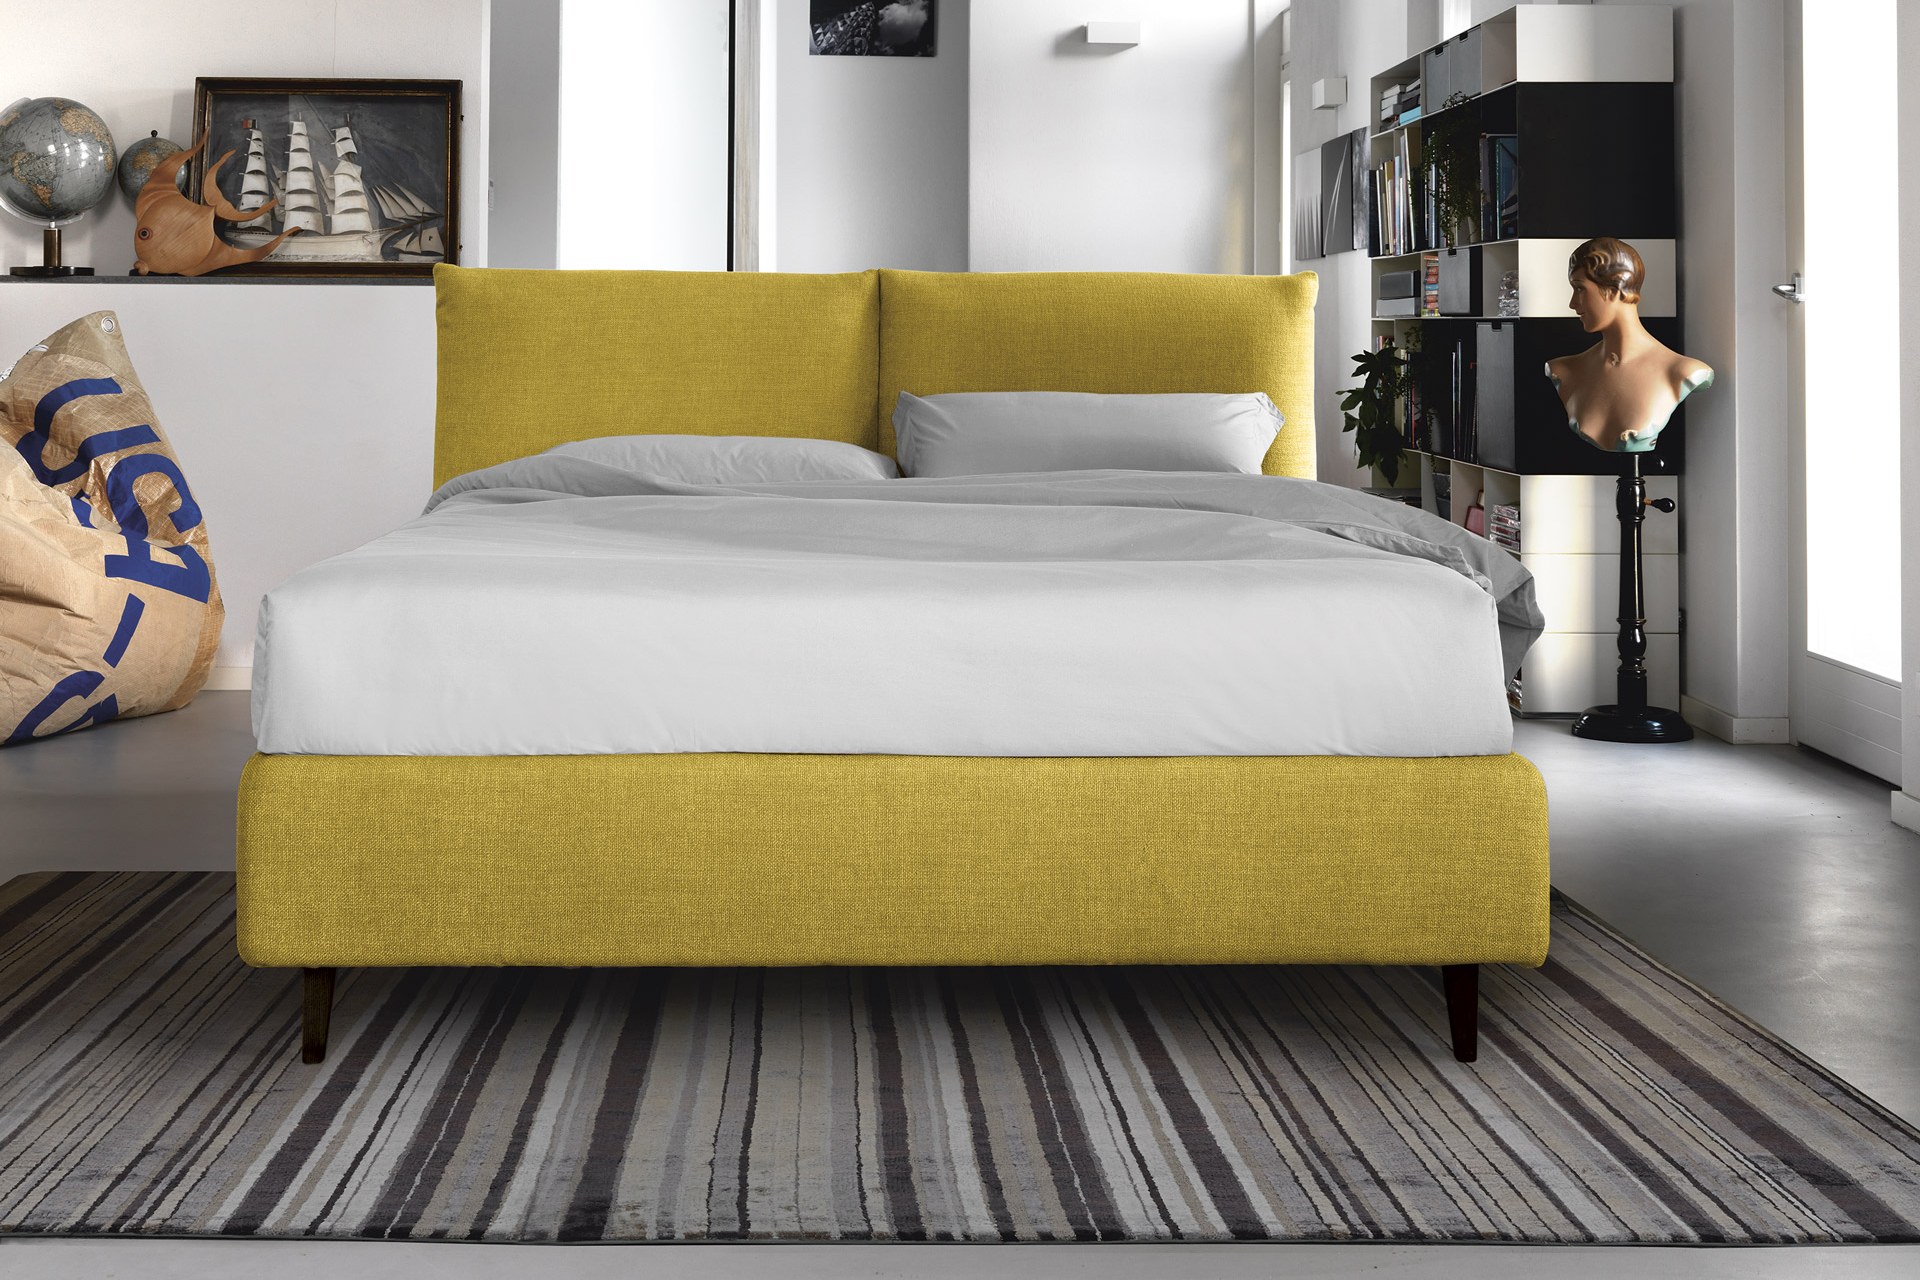 Горчичная кровать. Аскона кровать лофт. Velvet Yellow кровать 120x200. Кровать Аскона желтая. Кровать горчичного цвета.